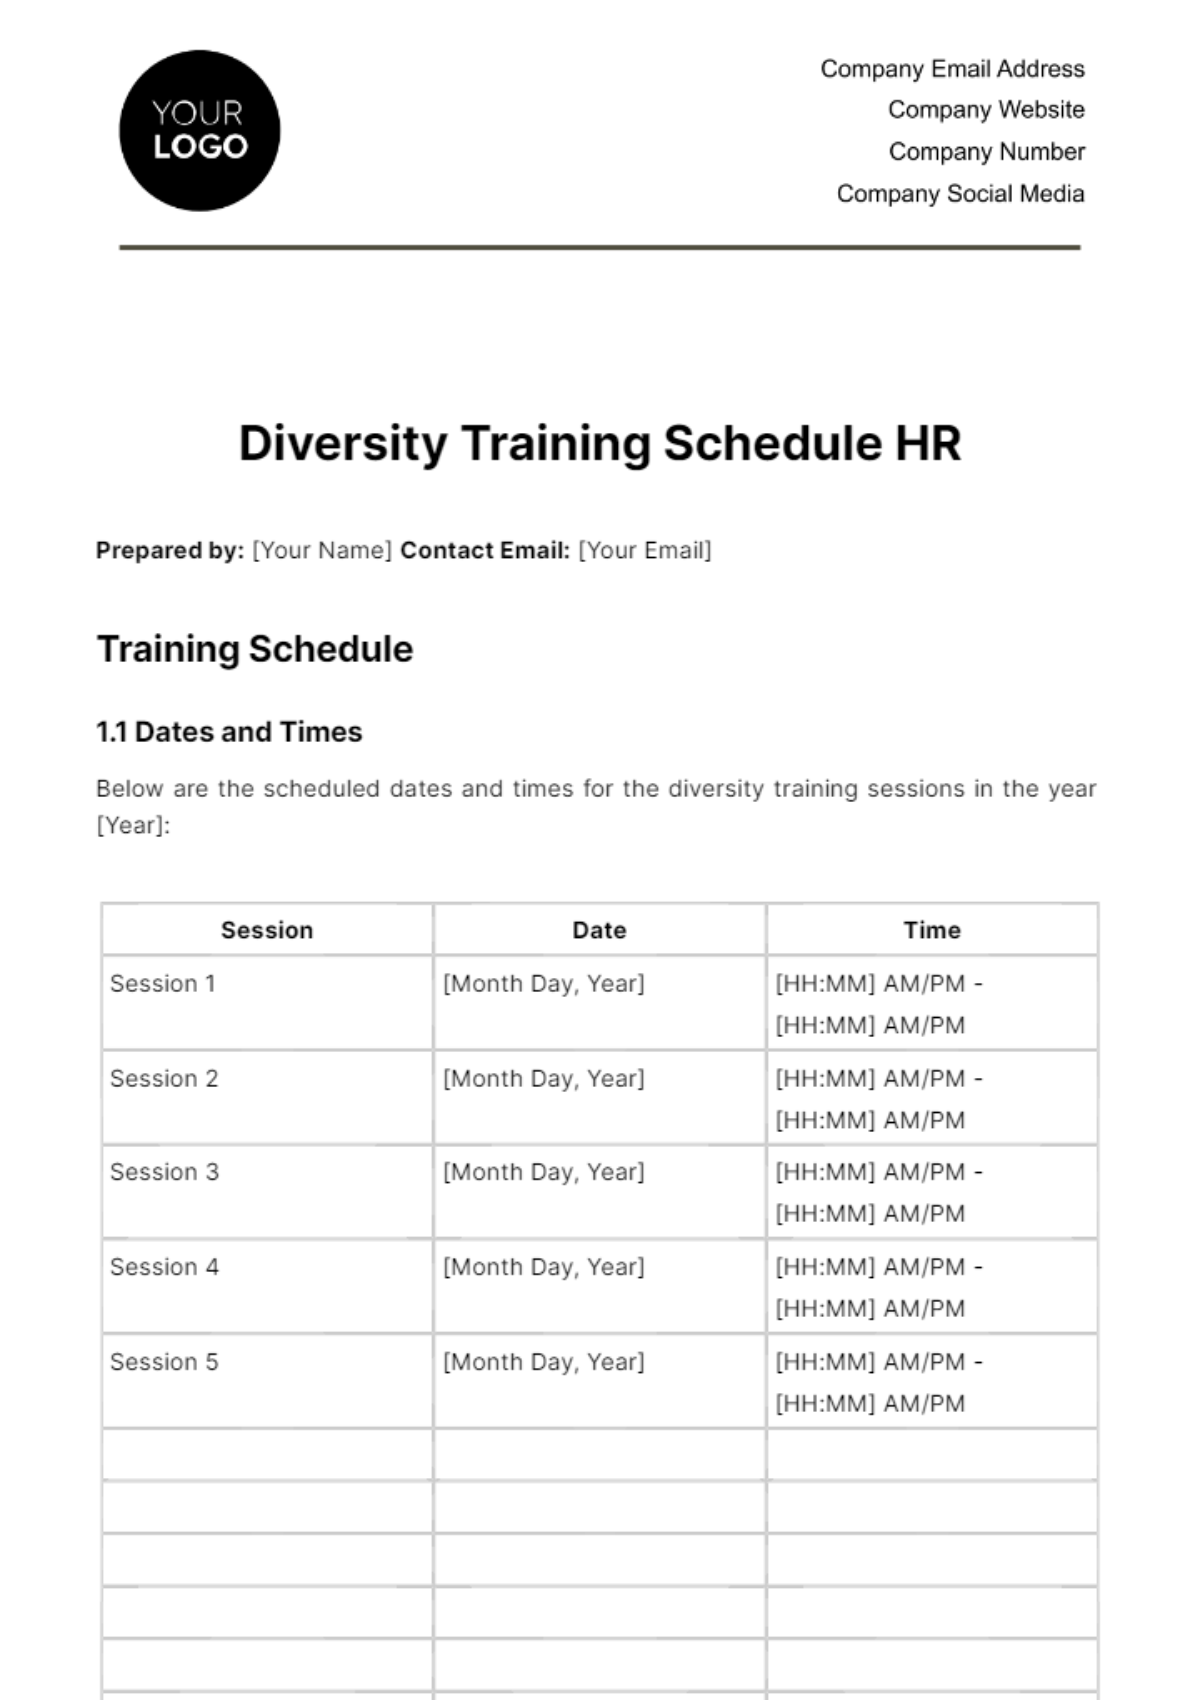 Diversity Training Schedule HR Template